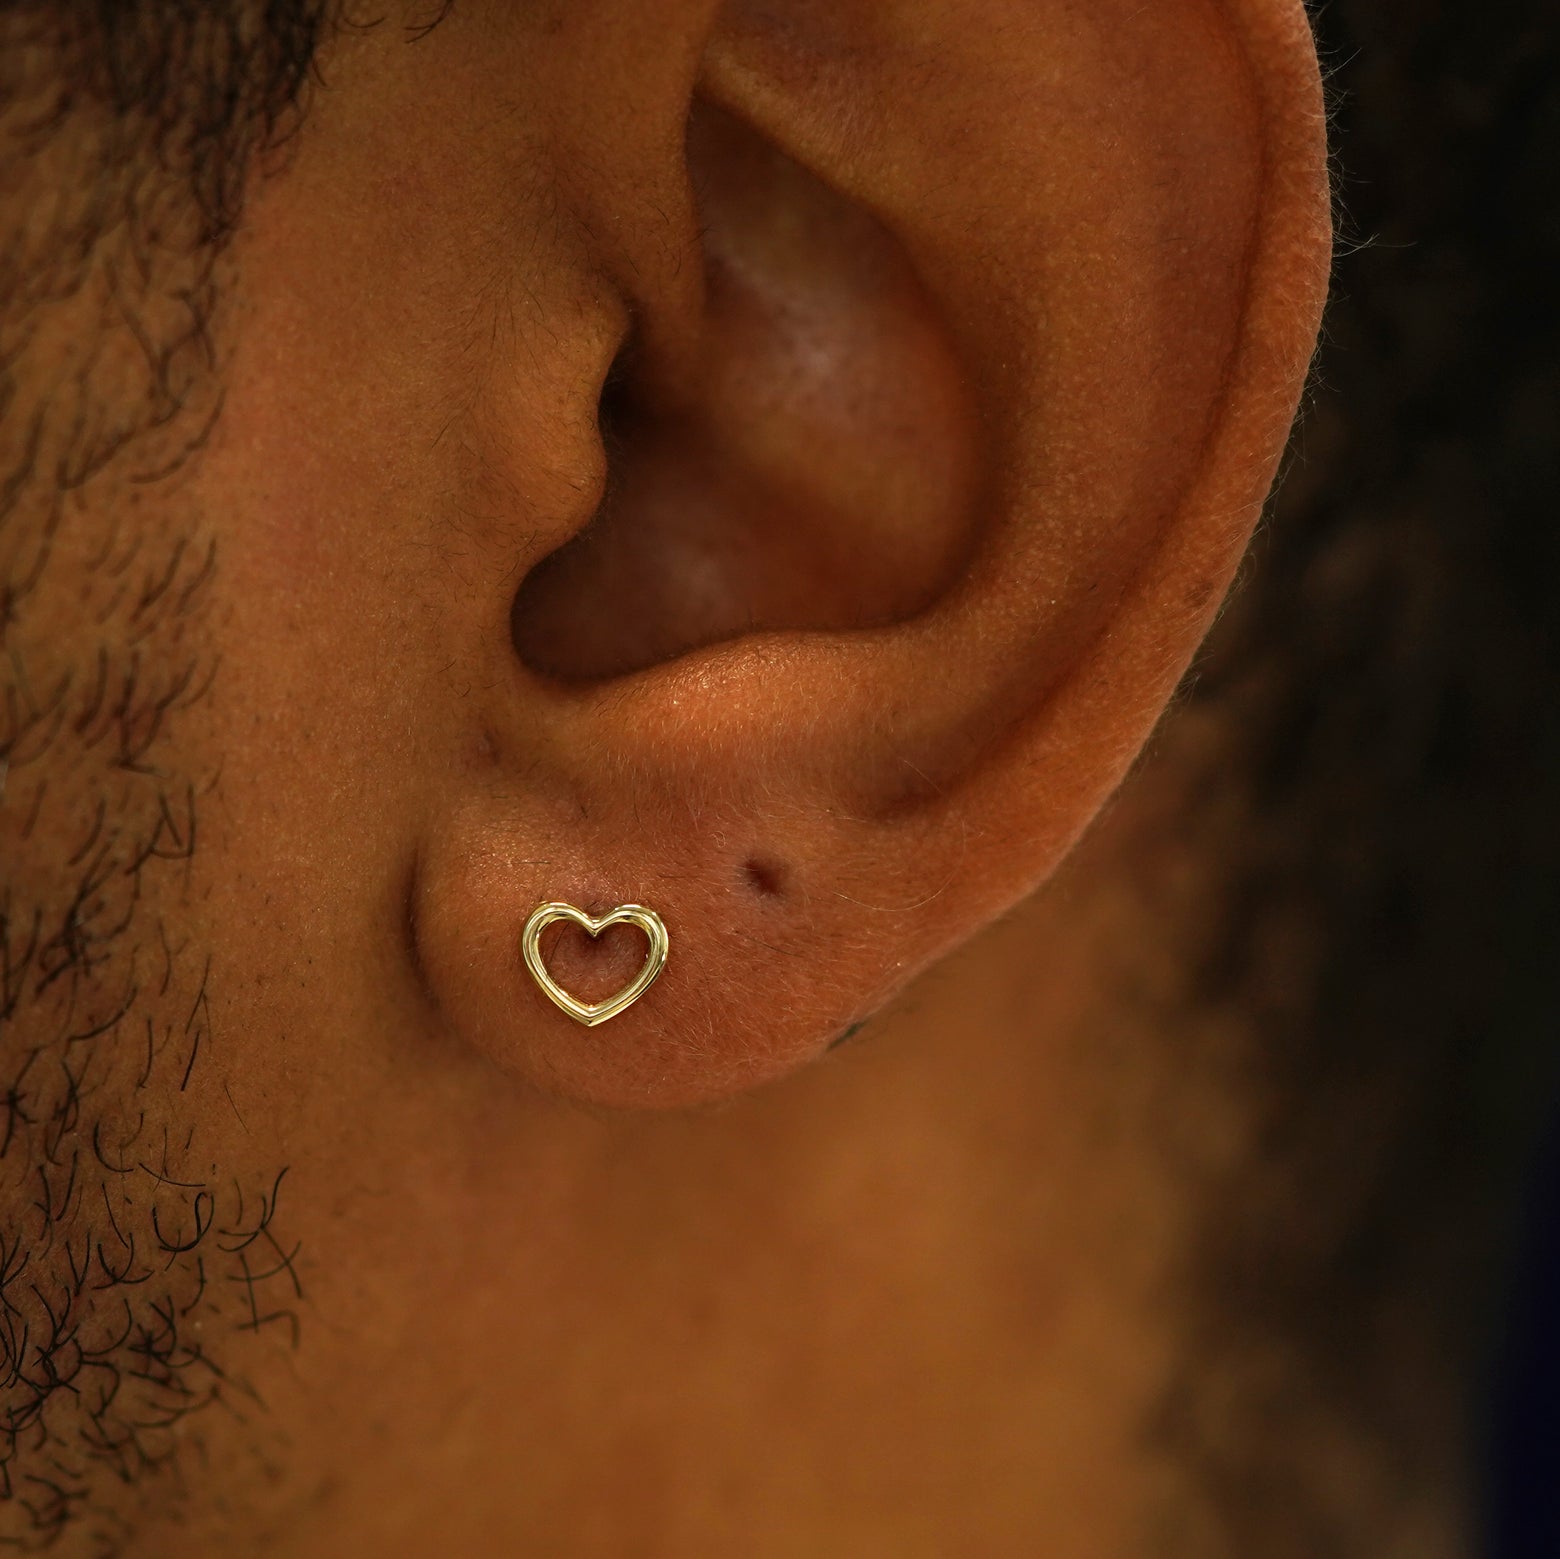 A model's ear wearing a 14k gold open Heart Earring